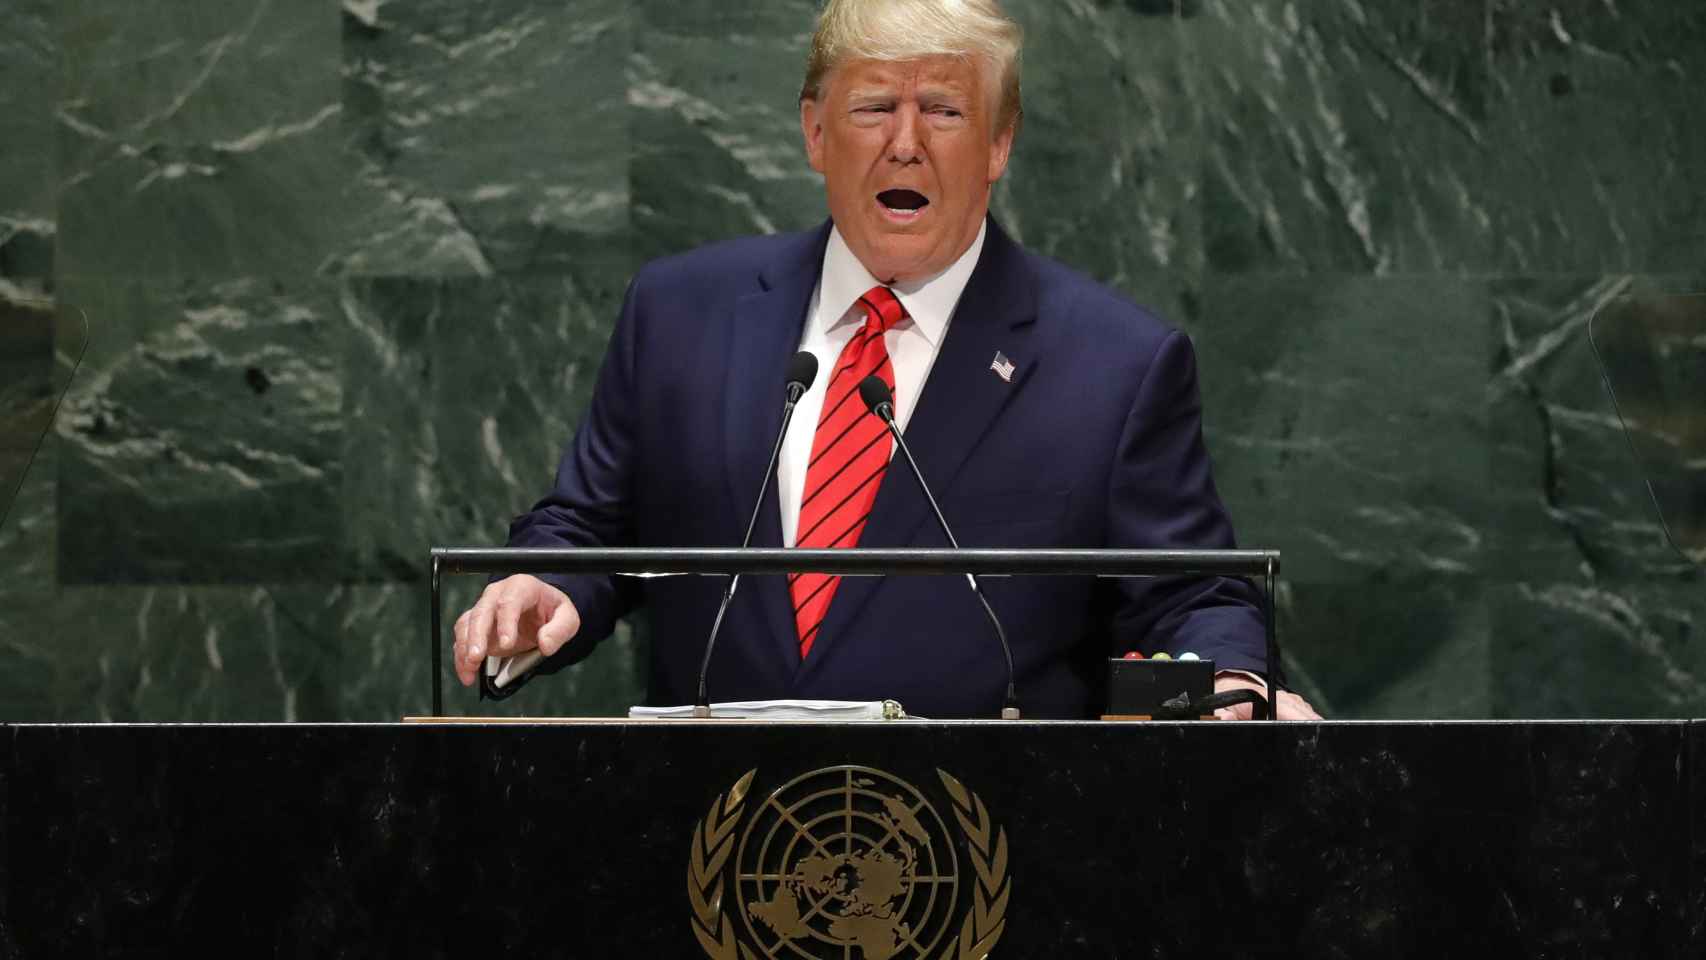 Trump durante su discurso en la ONU.